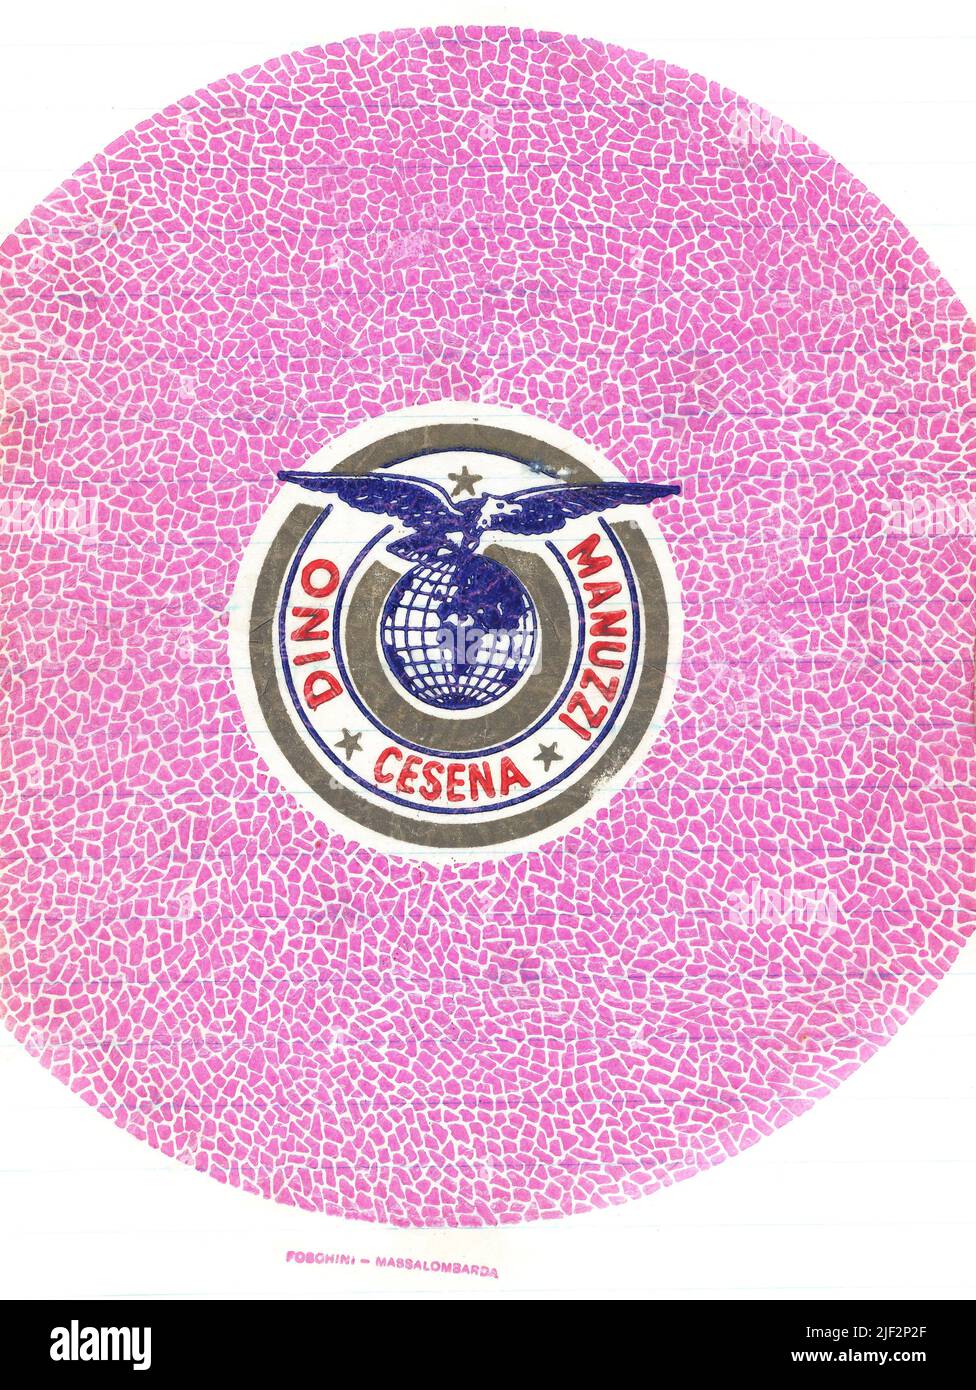 Frischobst-Papierverpackung, ab Mitte 1950s in England, mit Anbaumarke. Dino Manuzzi, Cesena. Adler auf der Spitze der Welt, rosa Kreismuster Stockfoto